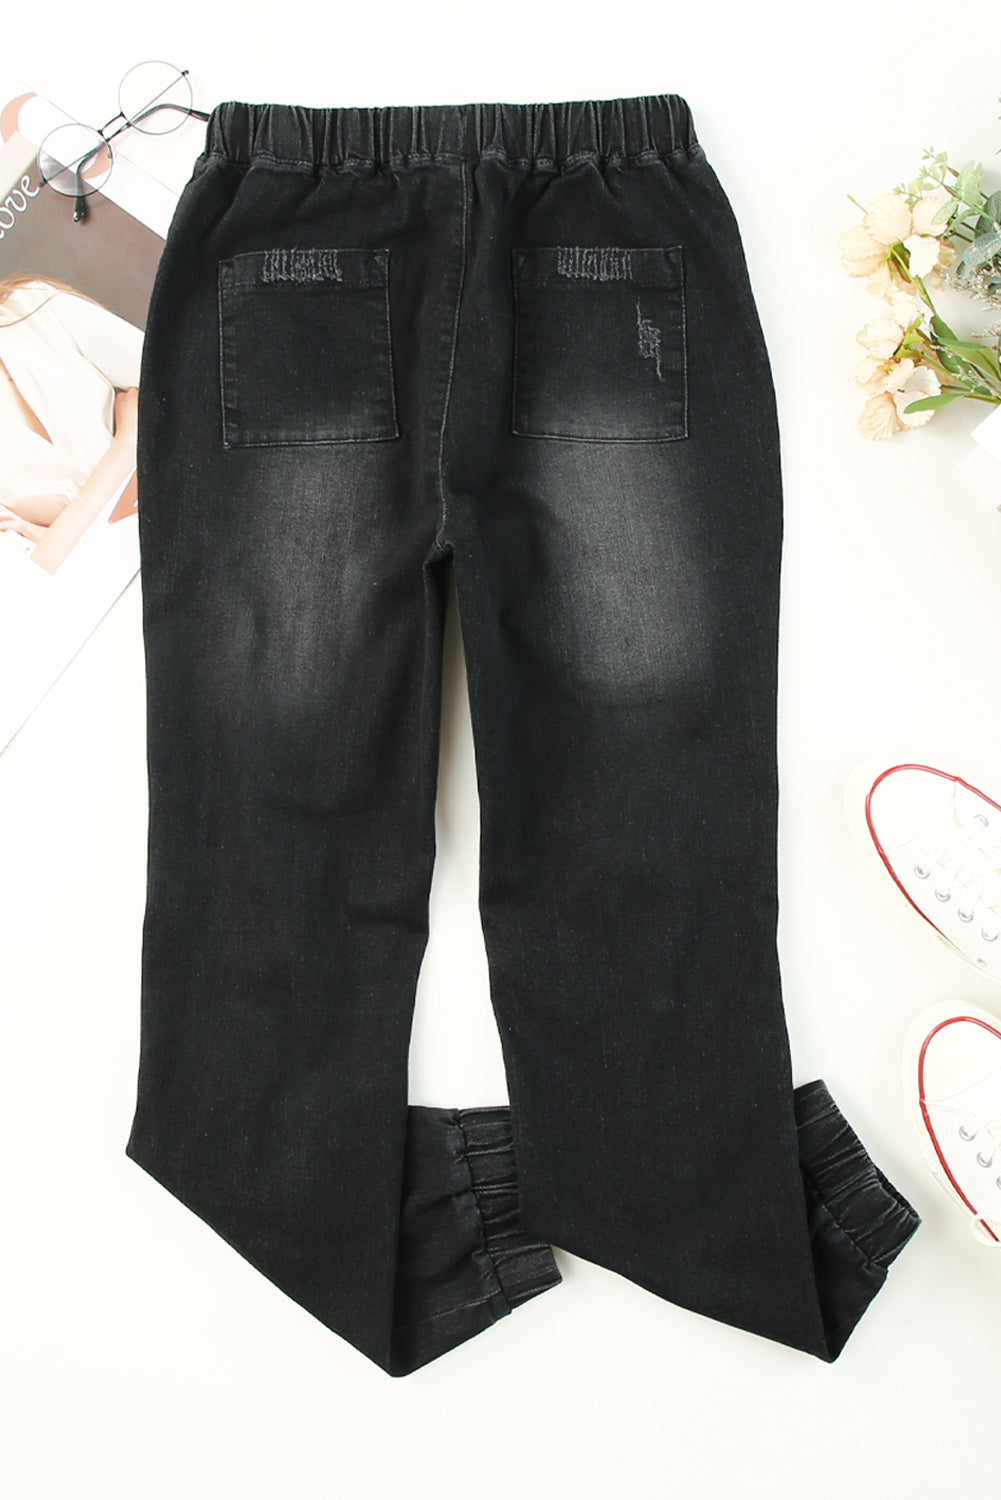 Black Pocketed Distressed Denim Jean Jeans JT's Designer Fashion